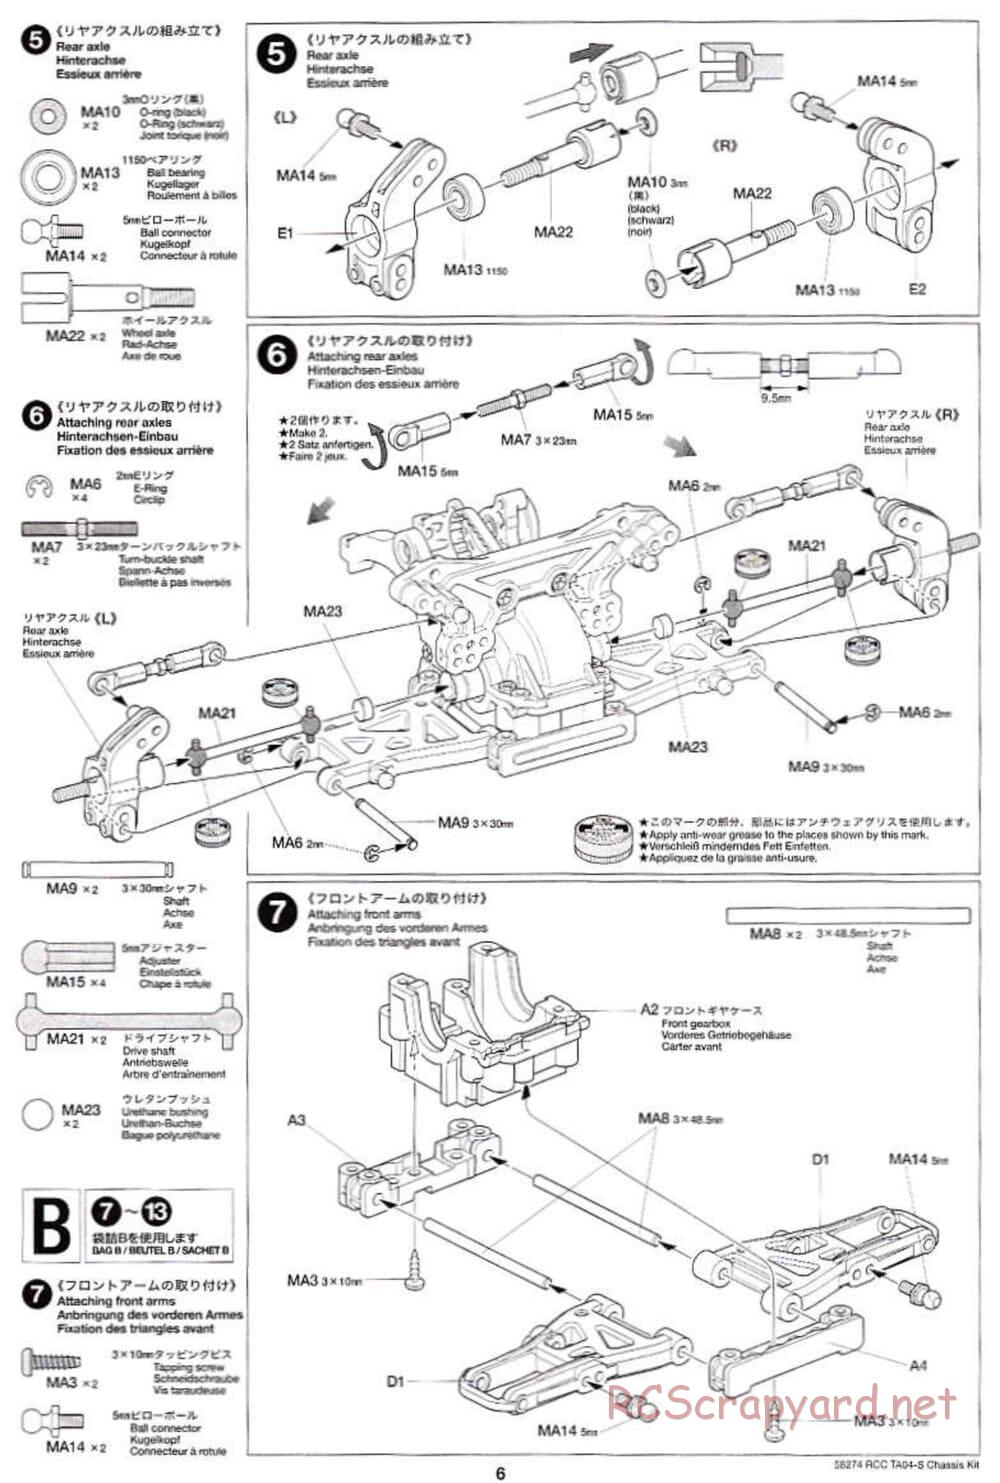 Tamiya - TA-04S Chassis - Manual - Page 6